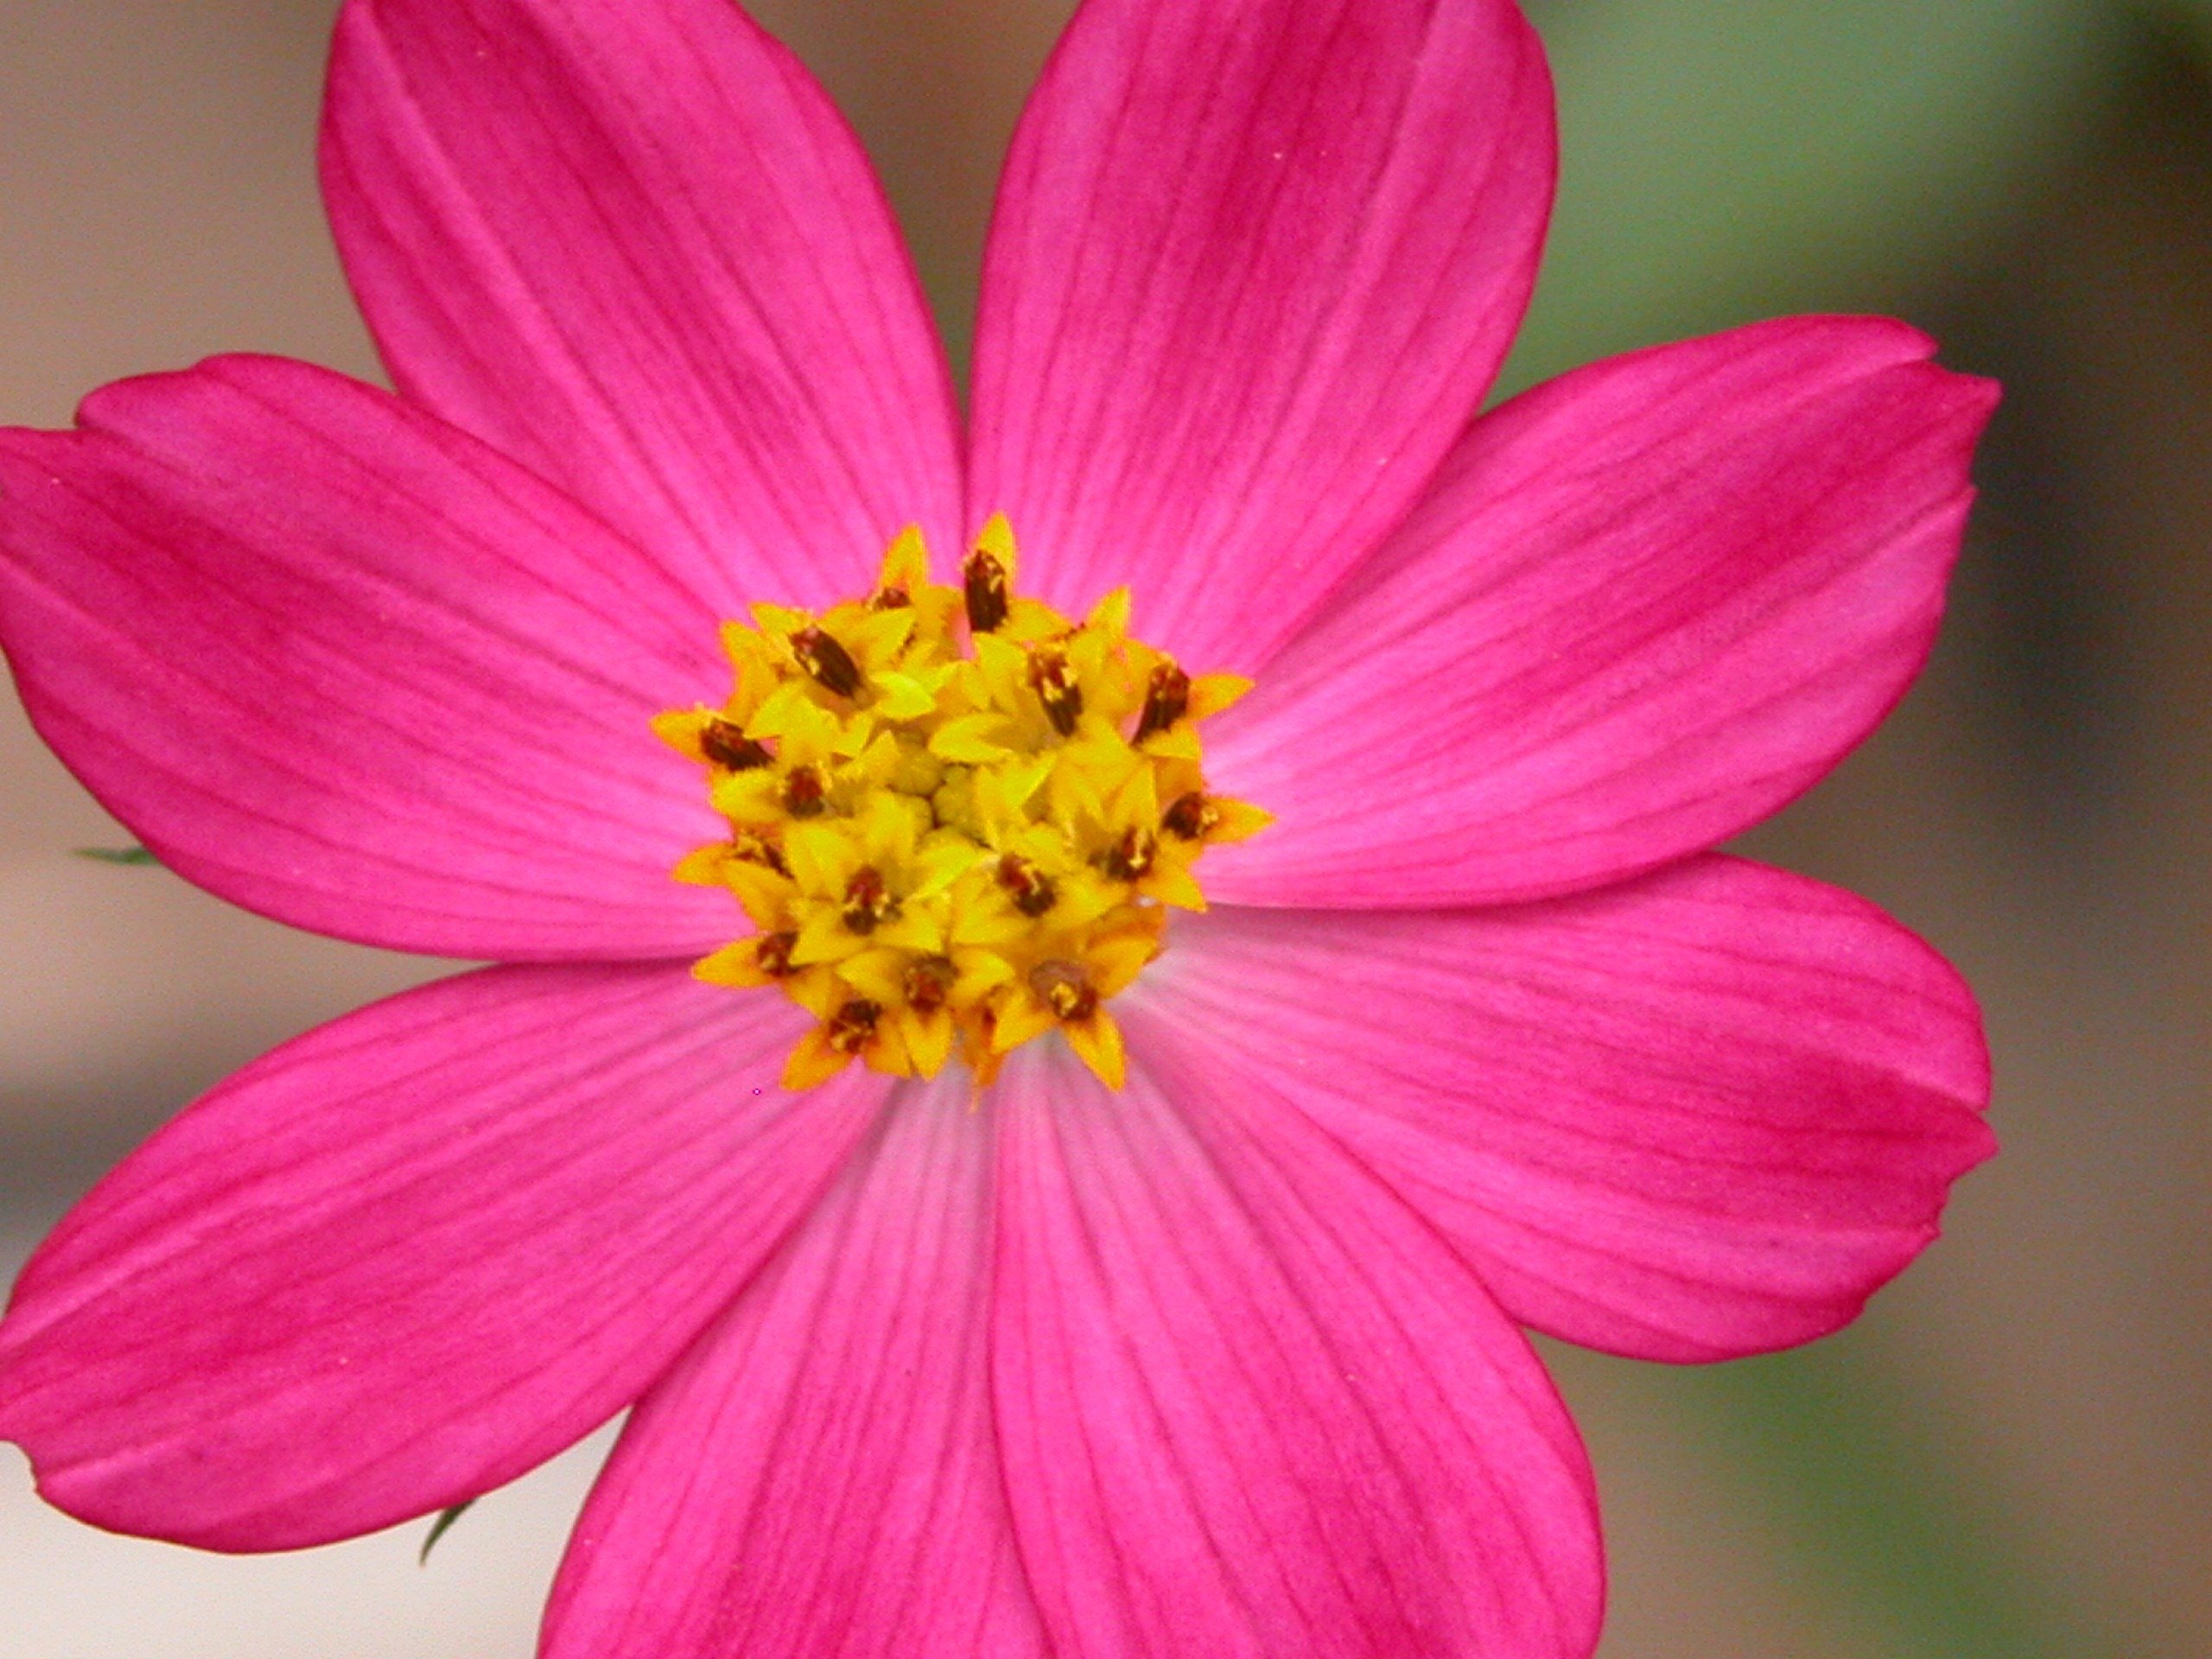 Flower mm2. Цветочки. Цветковые растения. Розовые цветы. Цветымсмкрупными лепестками.